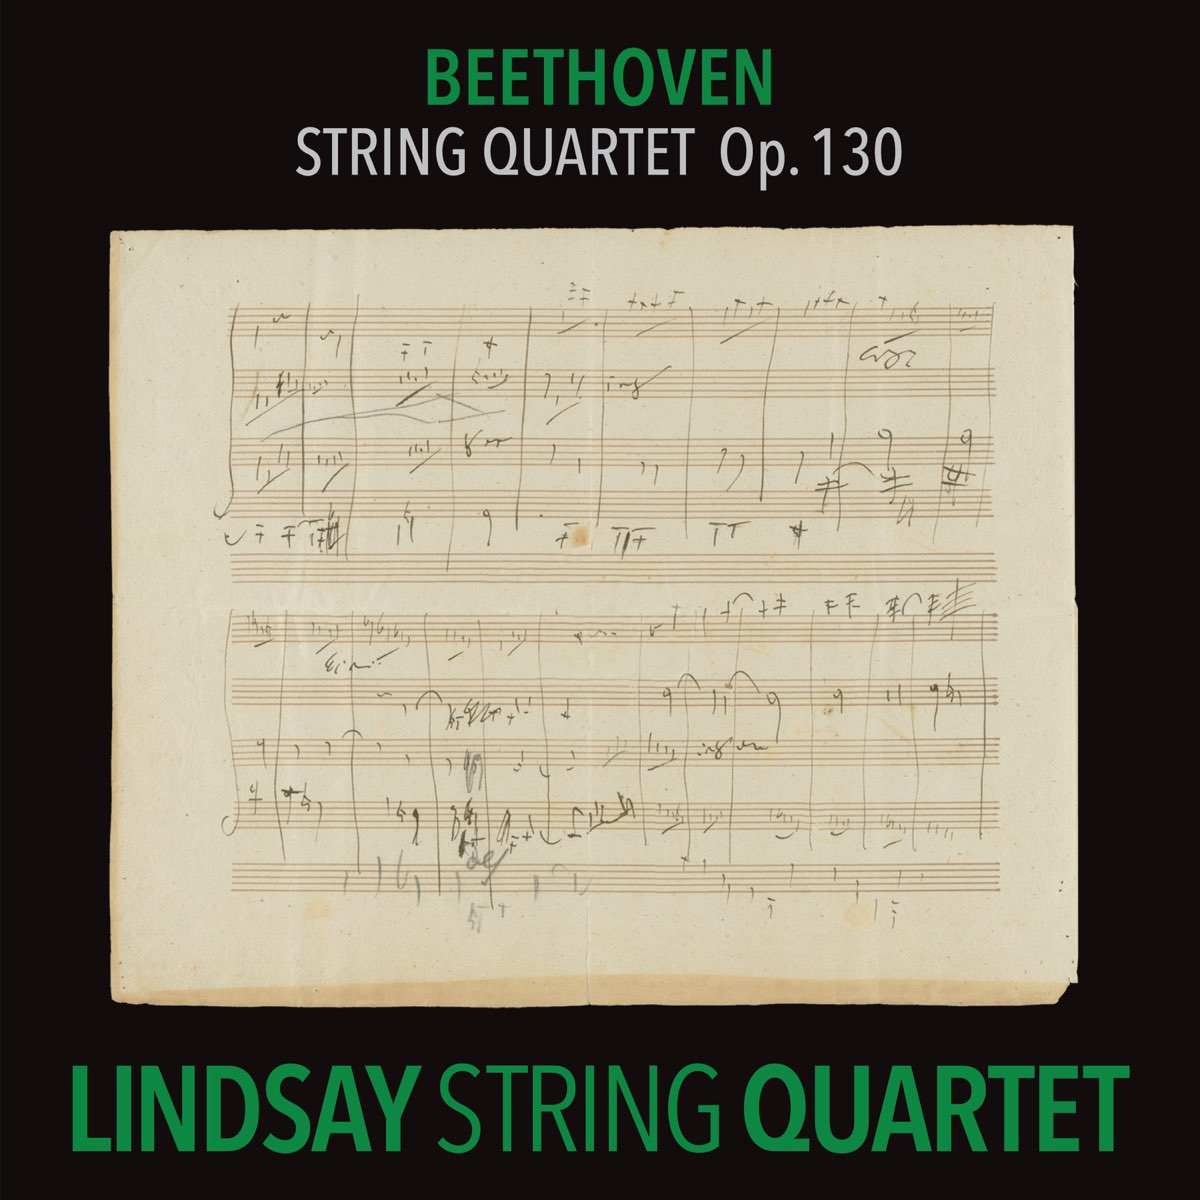 Beethoven: String Quartet in B-Flat Major, Op. 130 (Lindsay String Quartet:  The Complete Beethoven String Quartets, Vol. 8) - Album by Lindsay String  Quartet - Apple Music